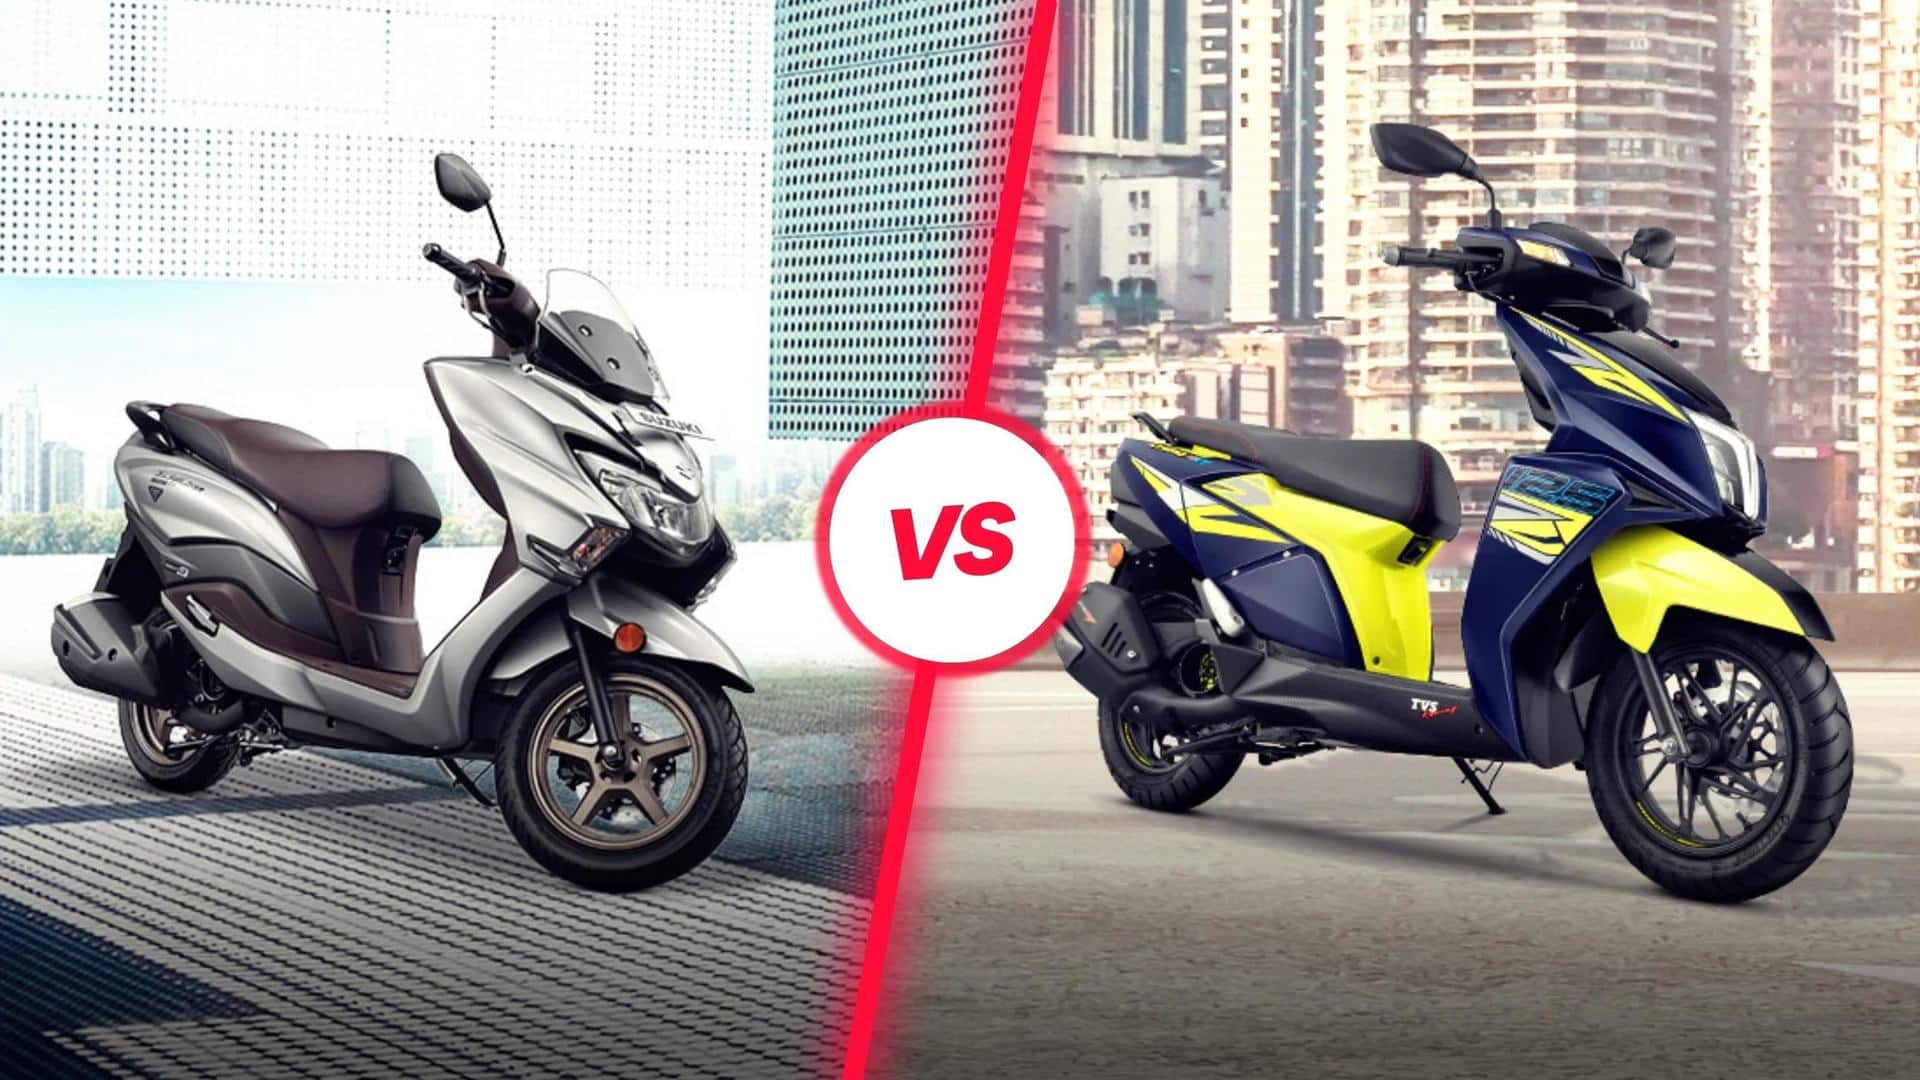 Suzuki Burgman Street v/s TVS Ntorq 125: Which is better?